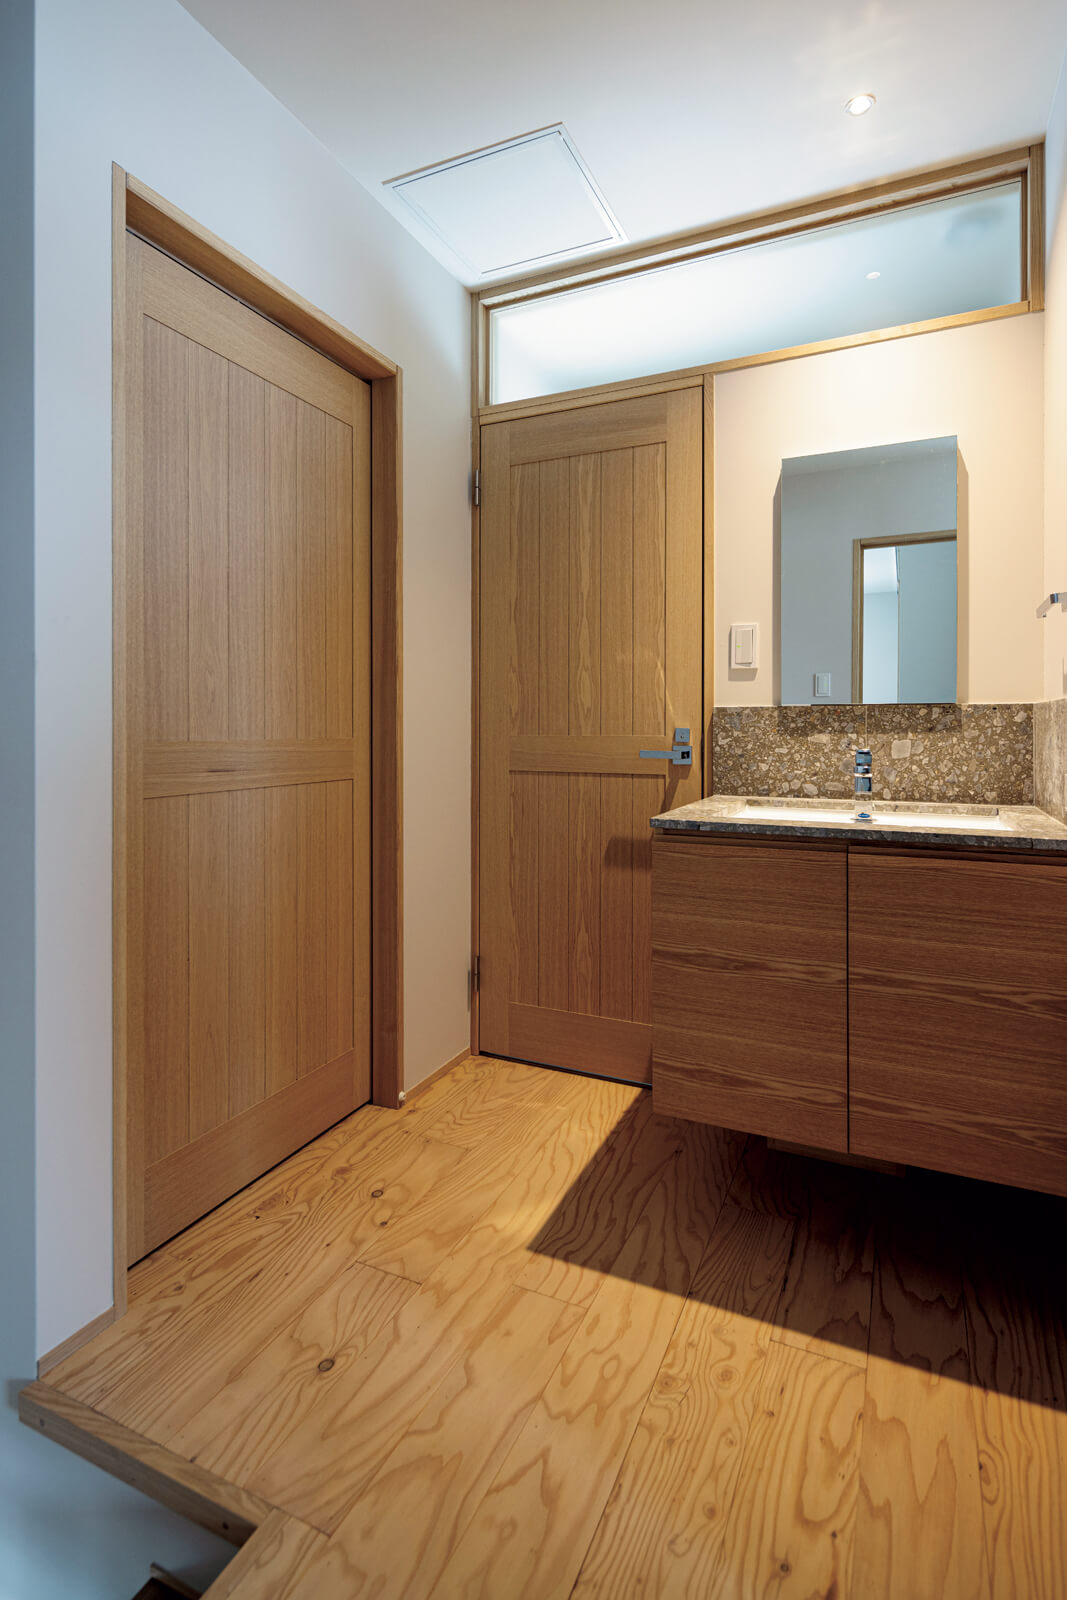 2階の階段ホールに独立型手洗い、トイレを設置。左手の扉の奥は、季節用品などをたっぷりしまえる納戸。2階の床はすべて、丁寧に磨いた構造用合板を採用している